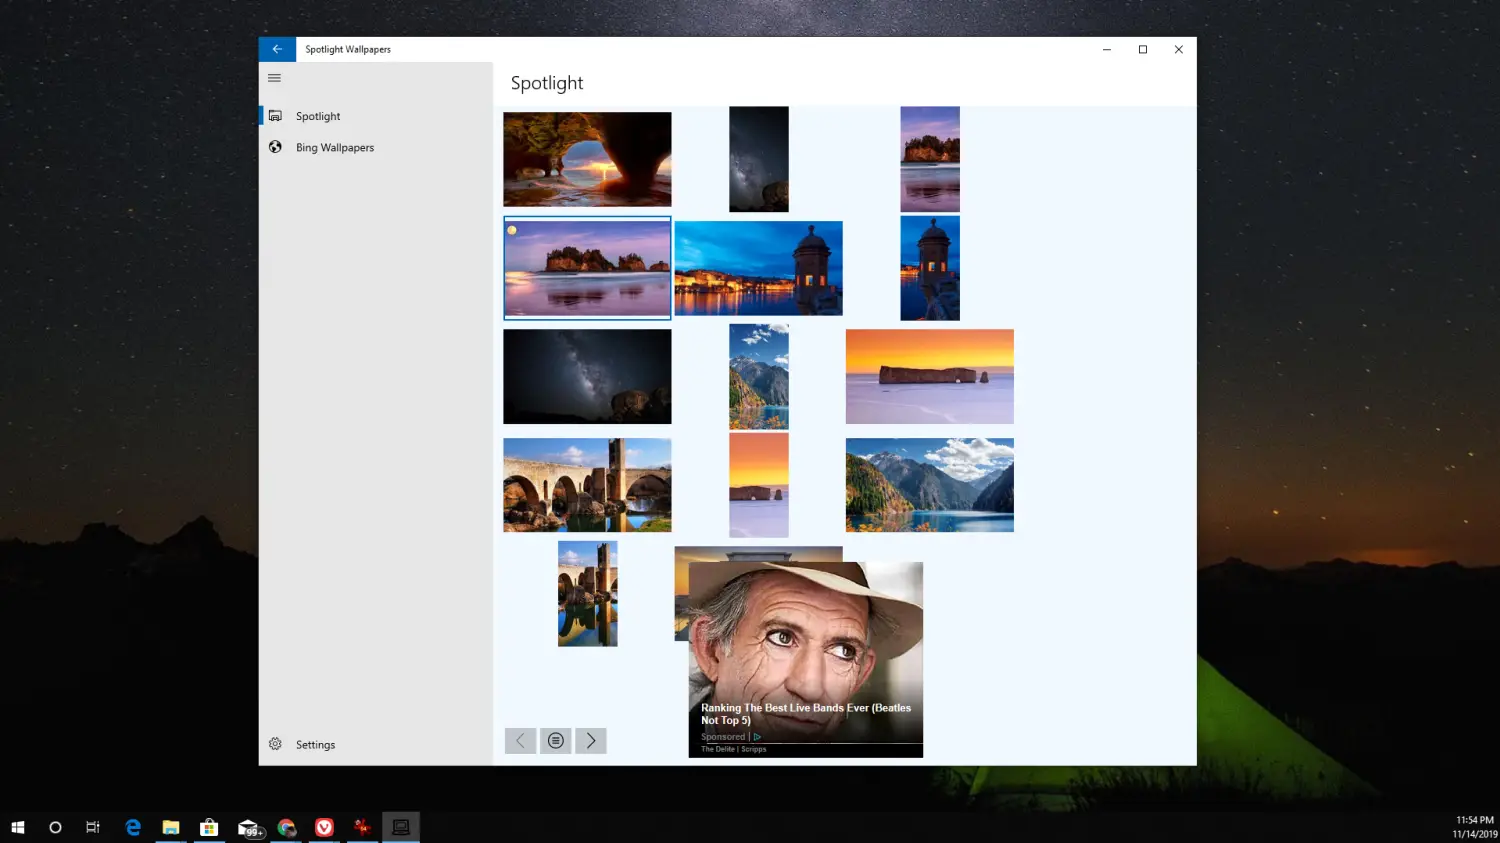 Captura de tela de imagens Spotlight e Bing em papéis de parede Spotlight